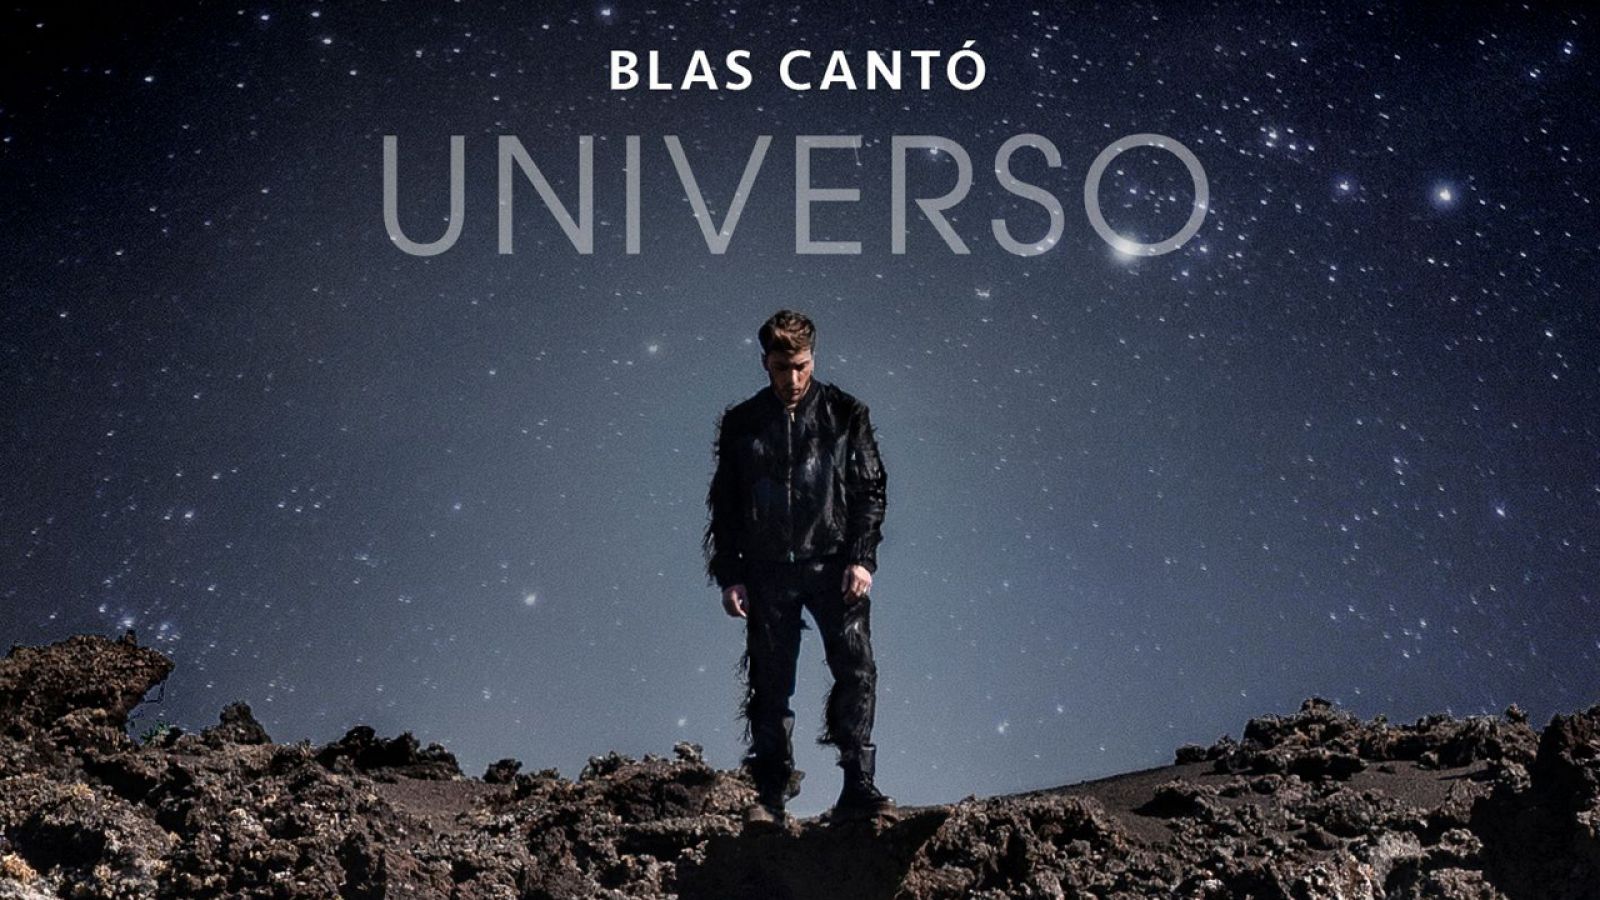 Portada de "Universo", la canción de Blas Cantó para Eurovisión 2020.